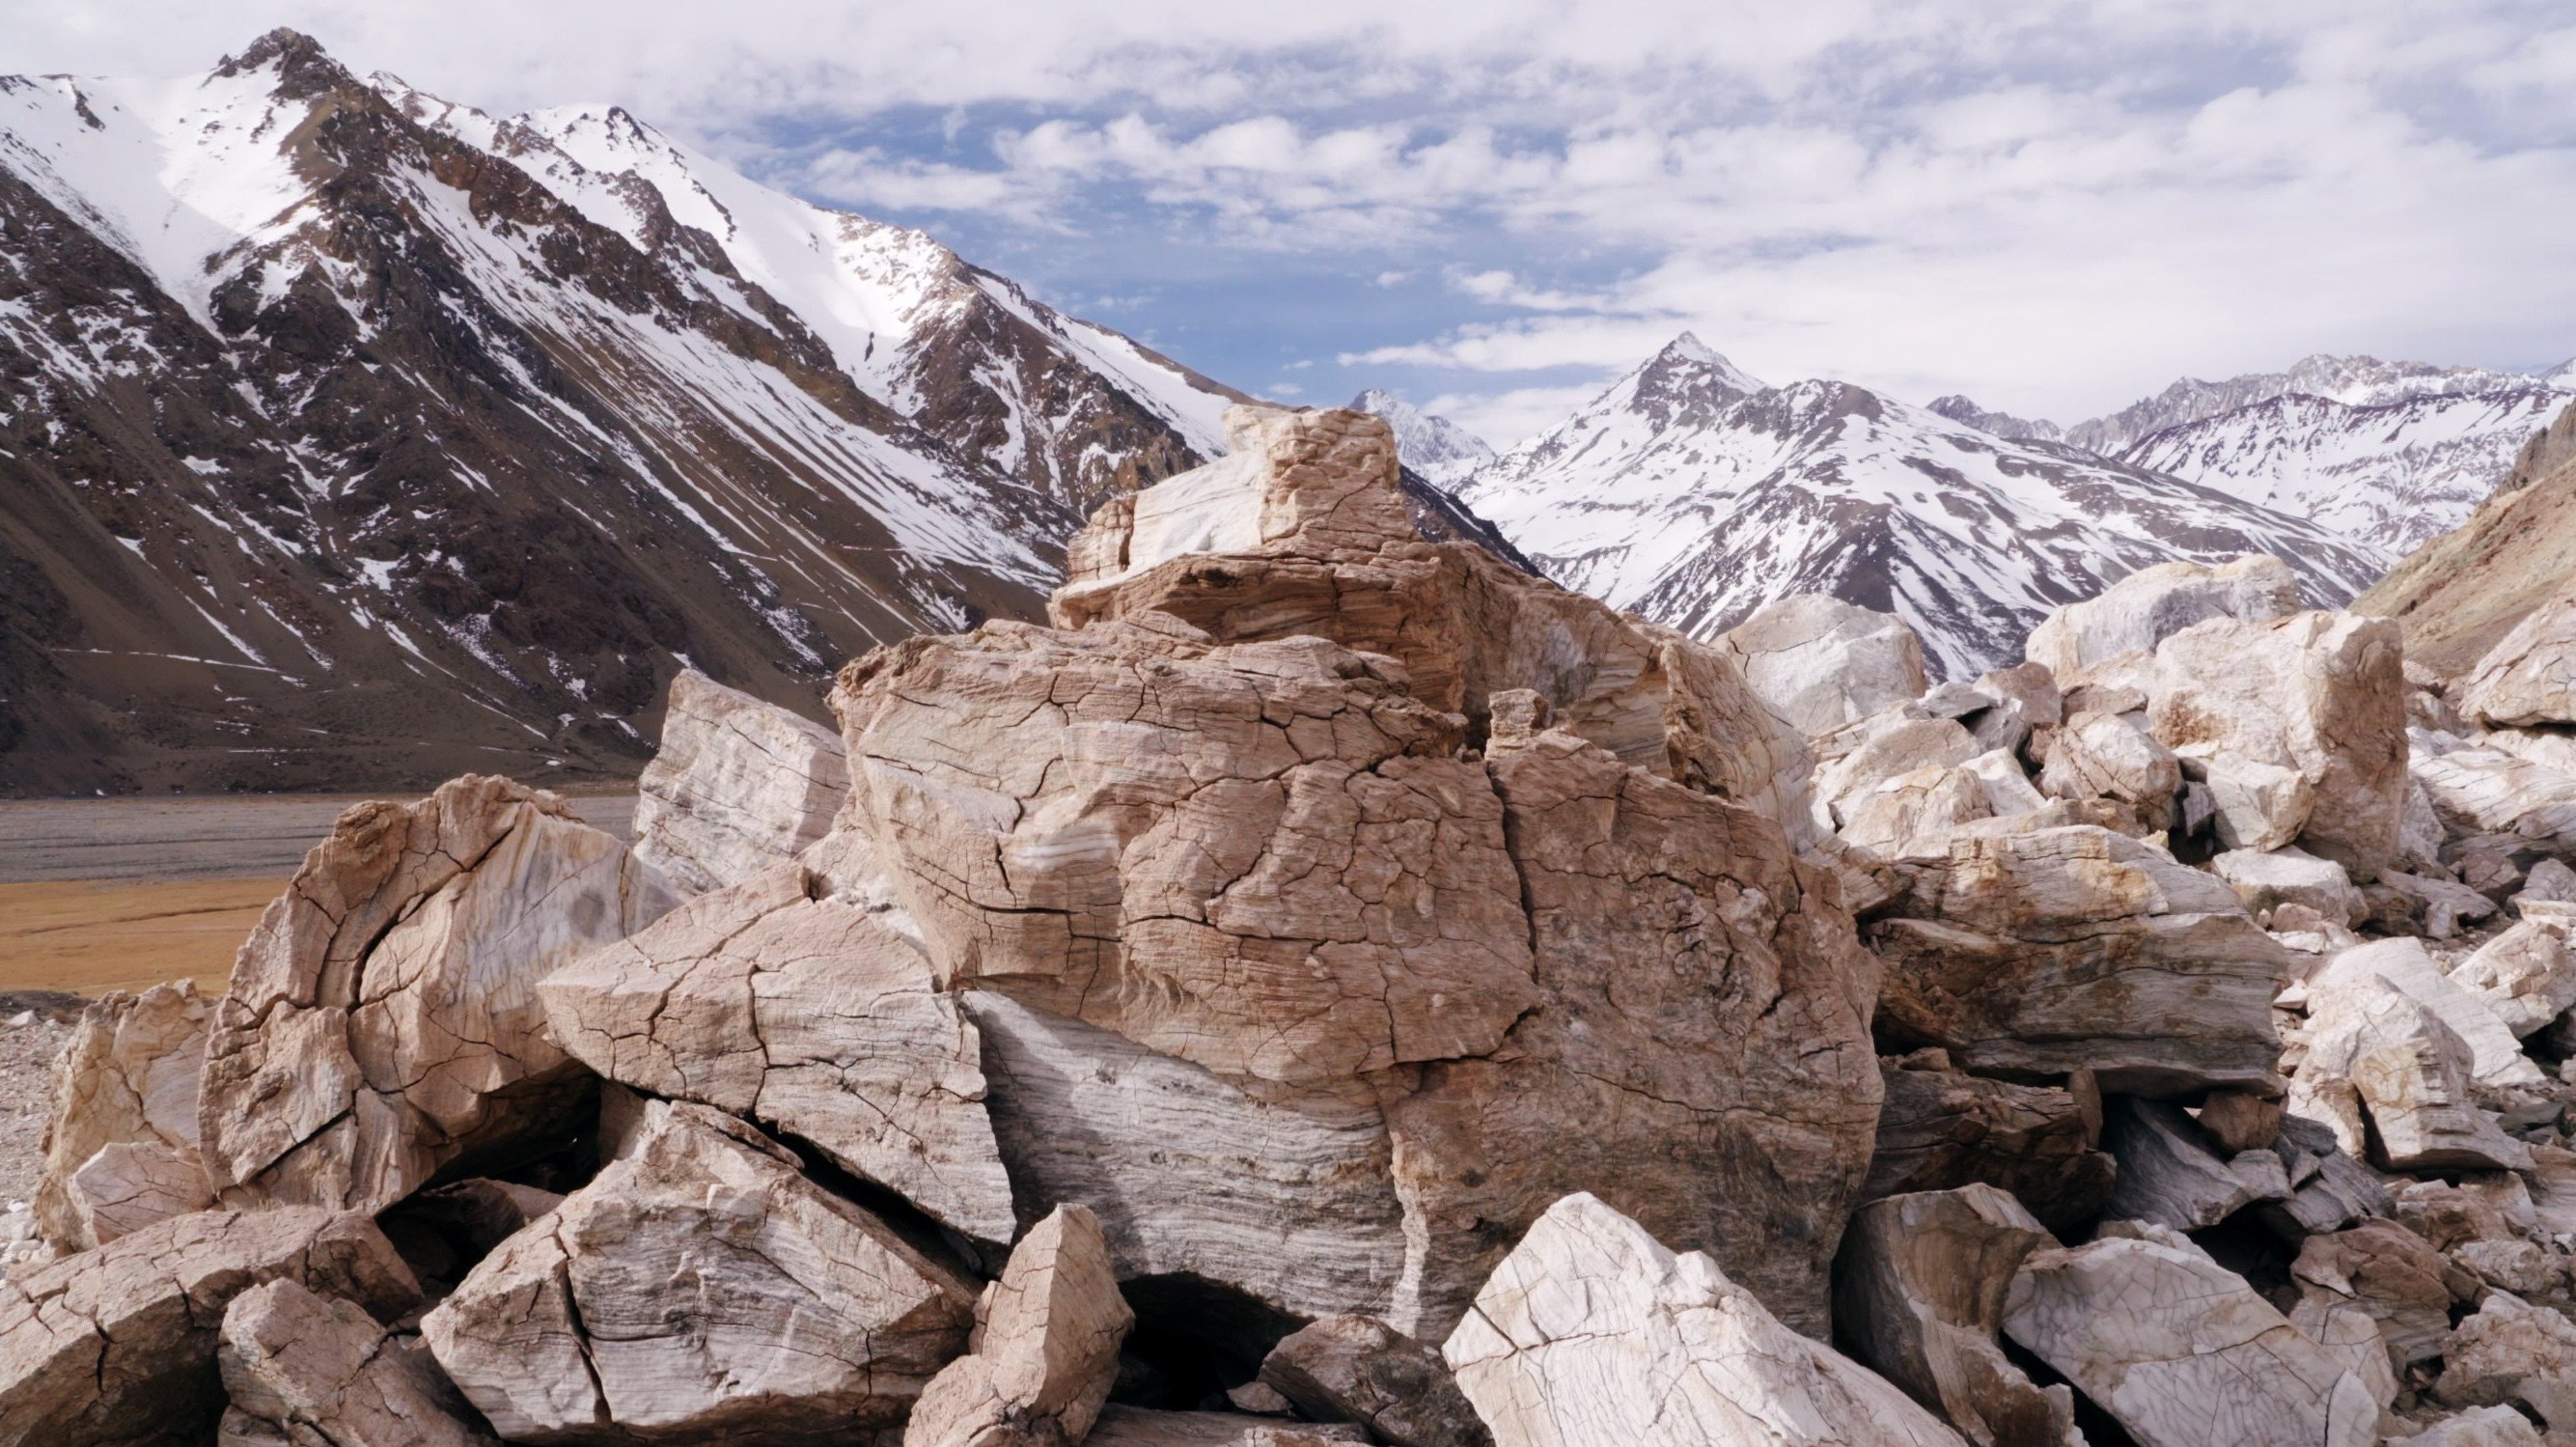 كلمة كورديليرا في الإسبانية تعني "سلسلة جبال"، والمقصود بها في الفيلم سلسلة جبال الأنديز الممتدة على حدود تشيلي 